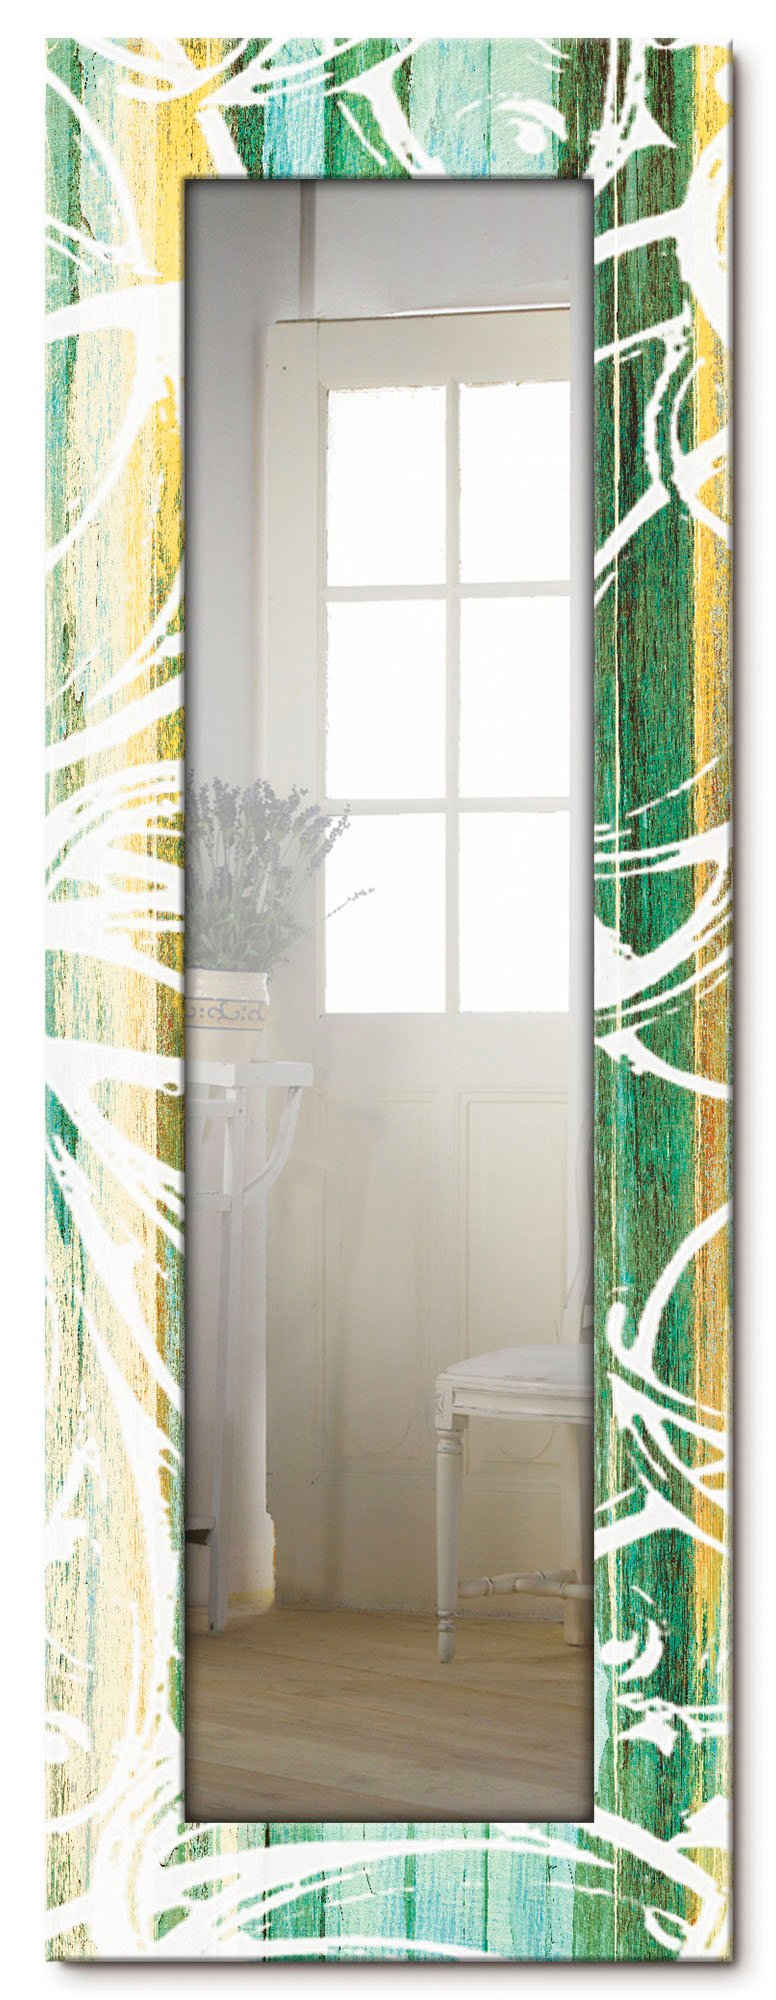 Artland Dekospiegel Ornamente im modernen Stil, gerahmter Ganzkörperspiegel, Wandspiegel, mit Motivrahmen, Landhaus